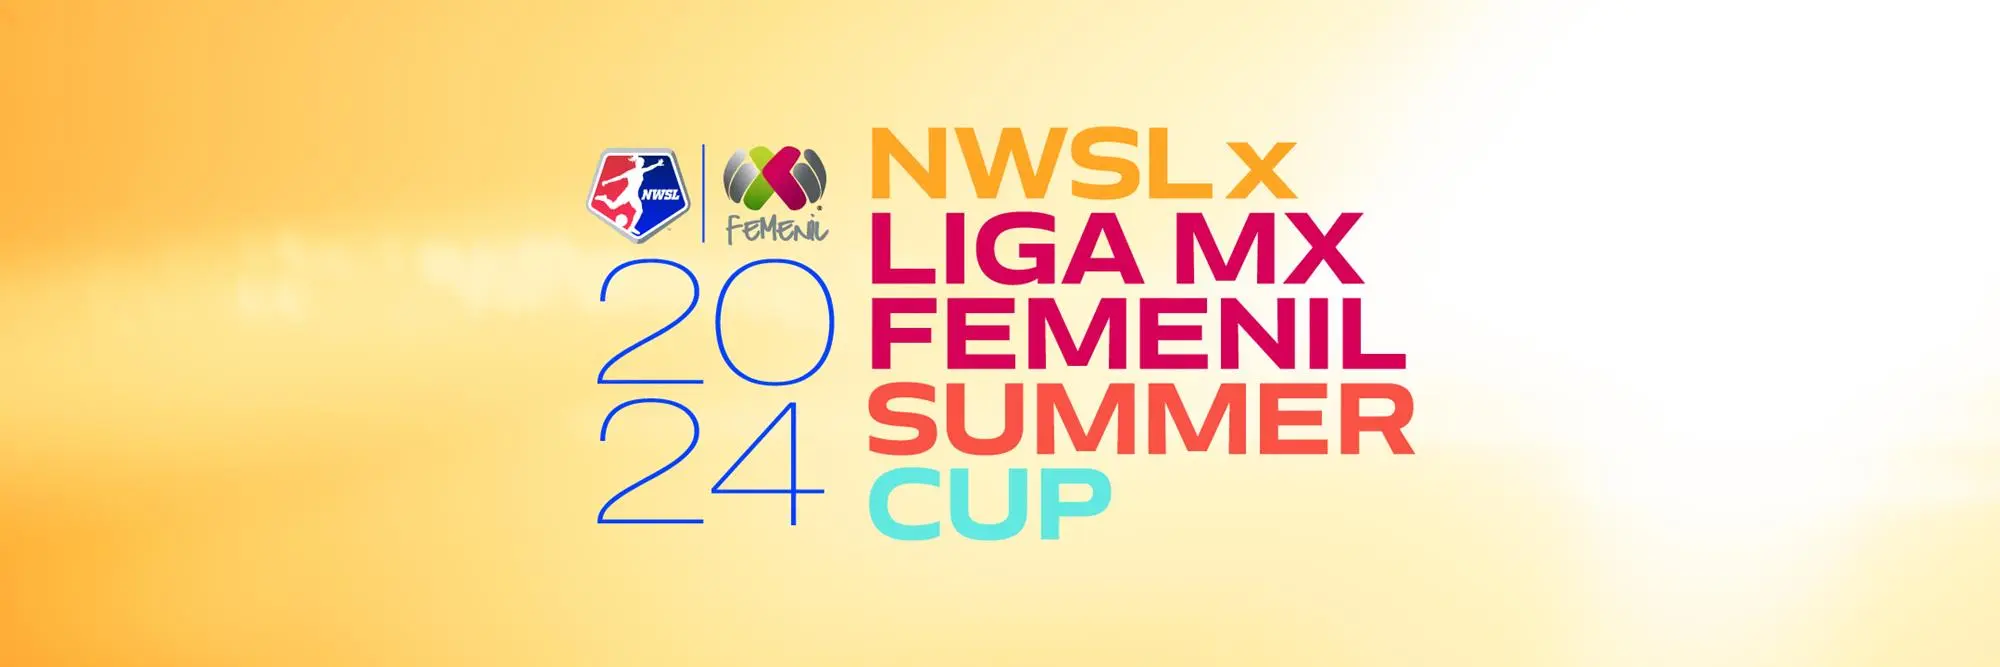 NWSL x LIGA MX Femenil Summer Cup